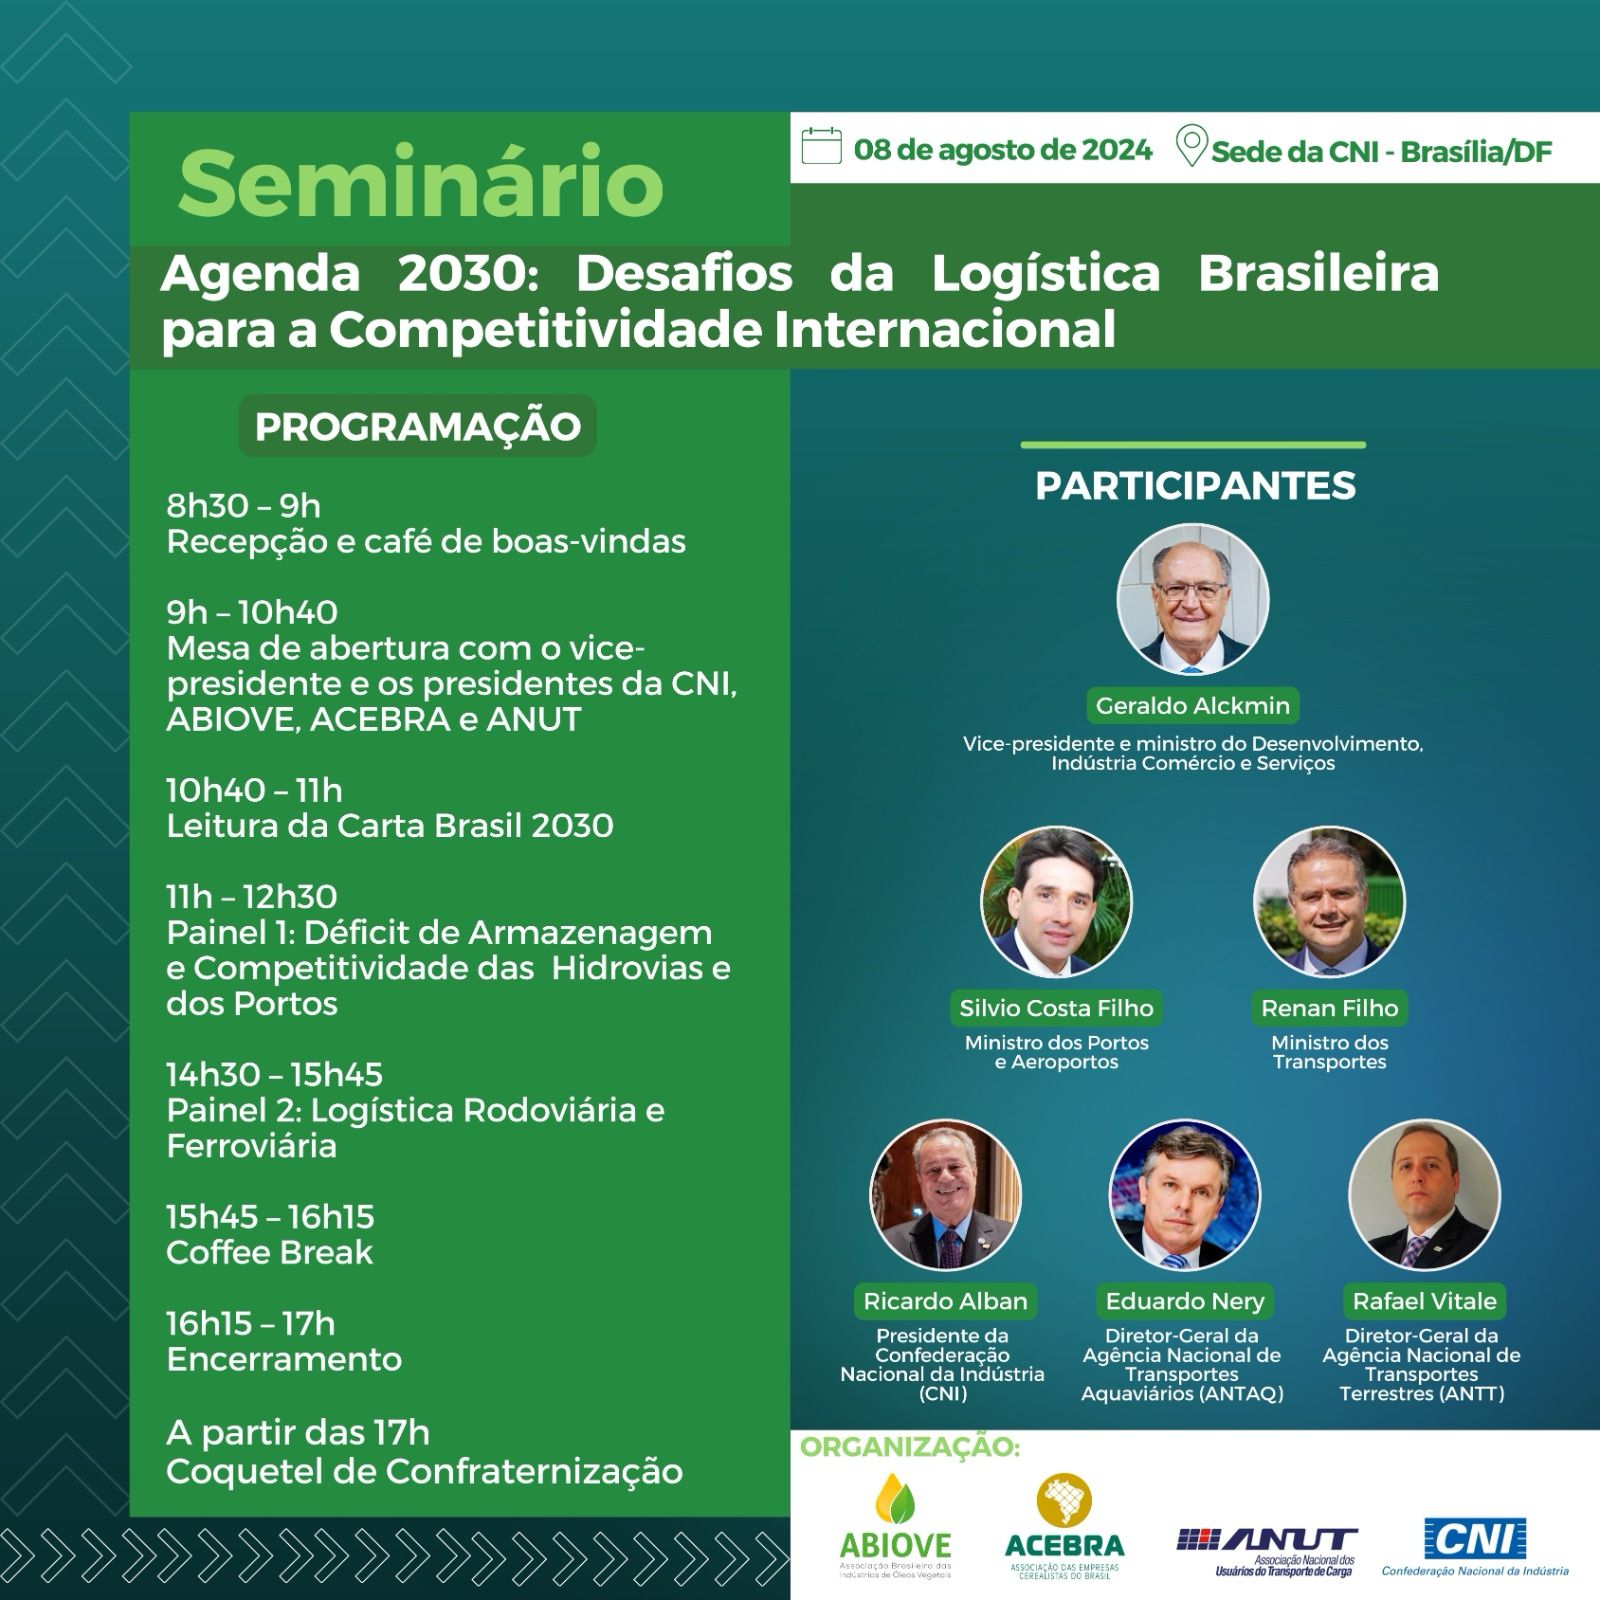 Seminário “Agenda 2030: Desafios da Logística Brasileira para a Competitividade Internacional” –  08/agosto em Brasília